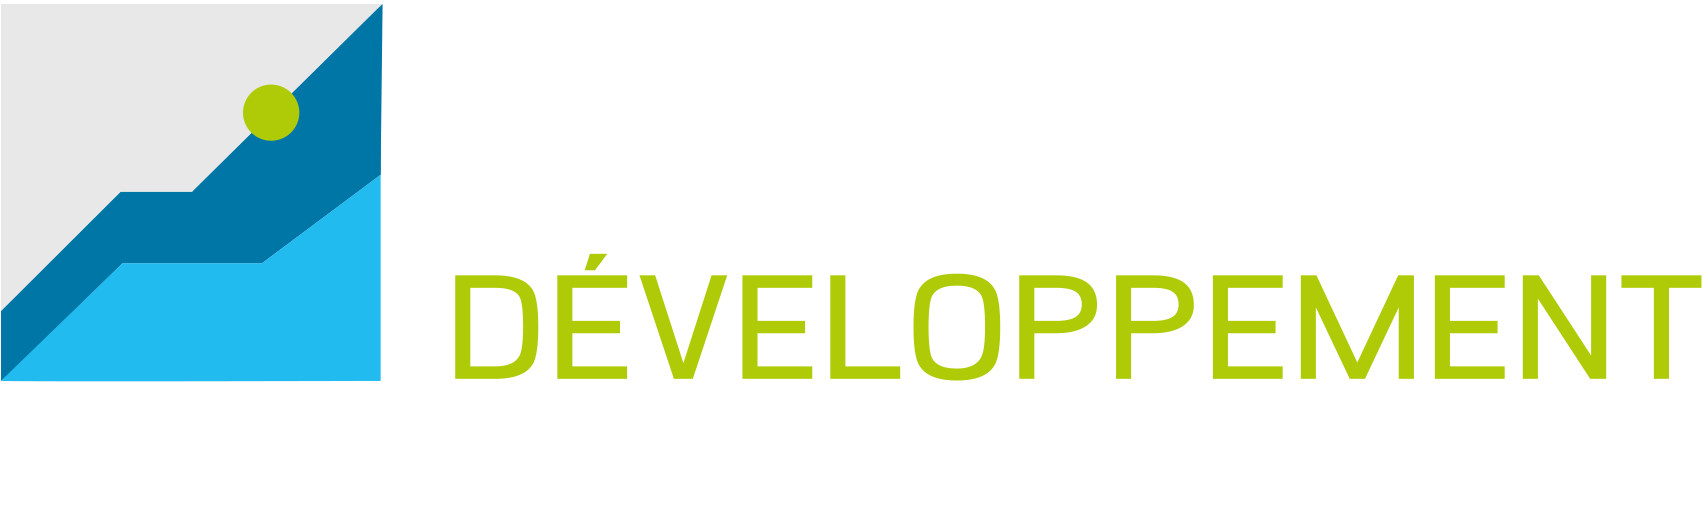 Ardennes Développement logo EN